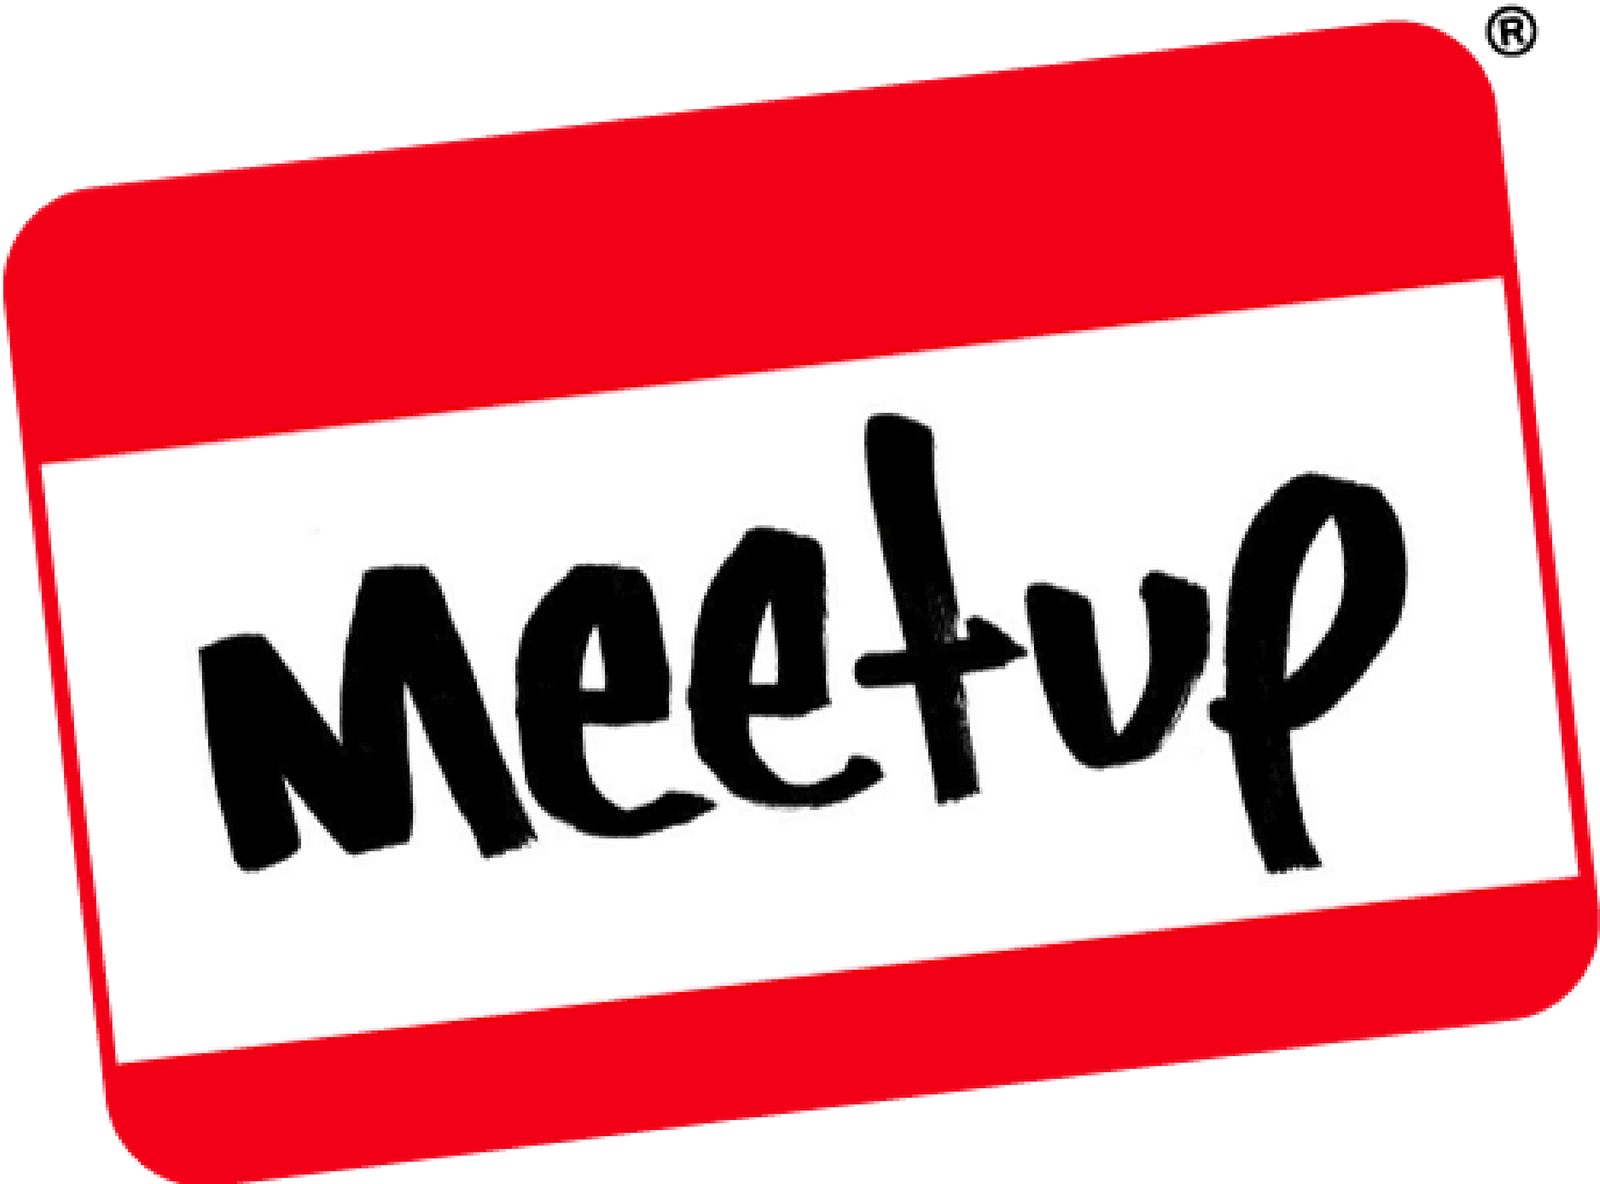 MeetUp: rede social divertida que prioriza o networking, saiba mais